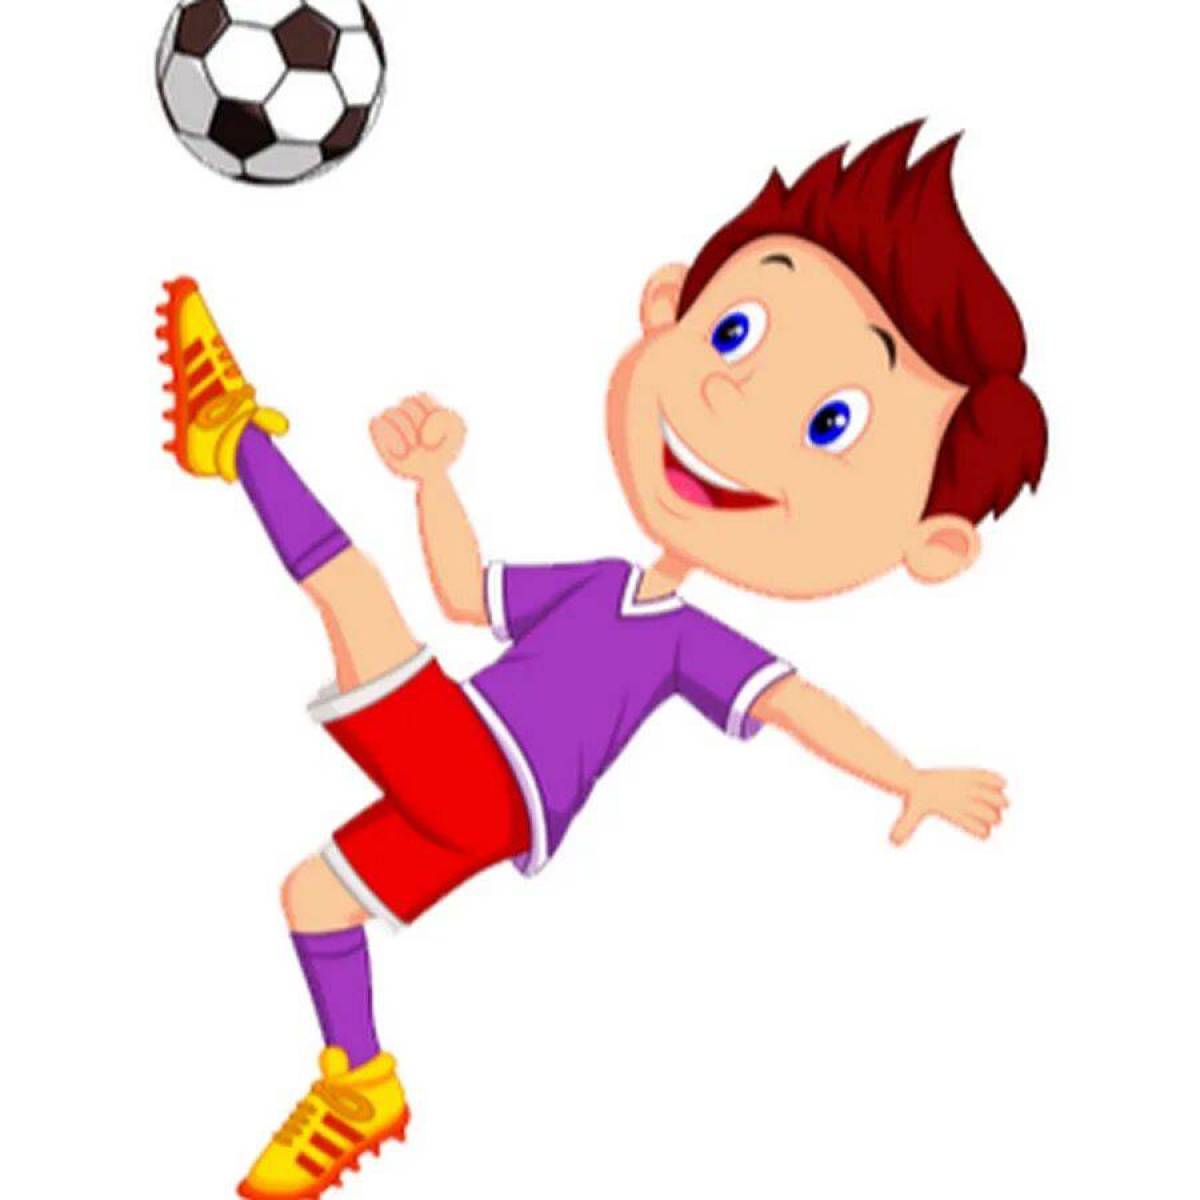 Футболист для детей #2